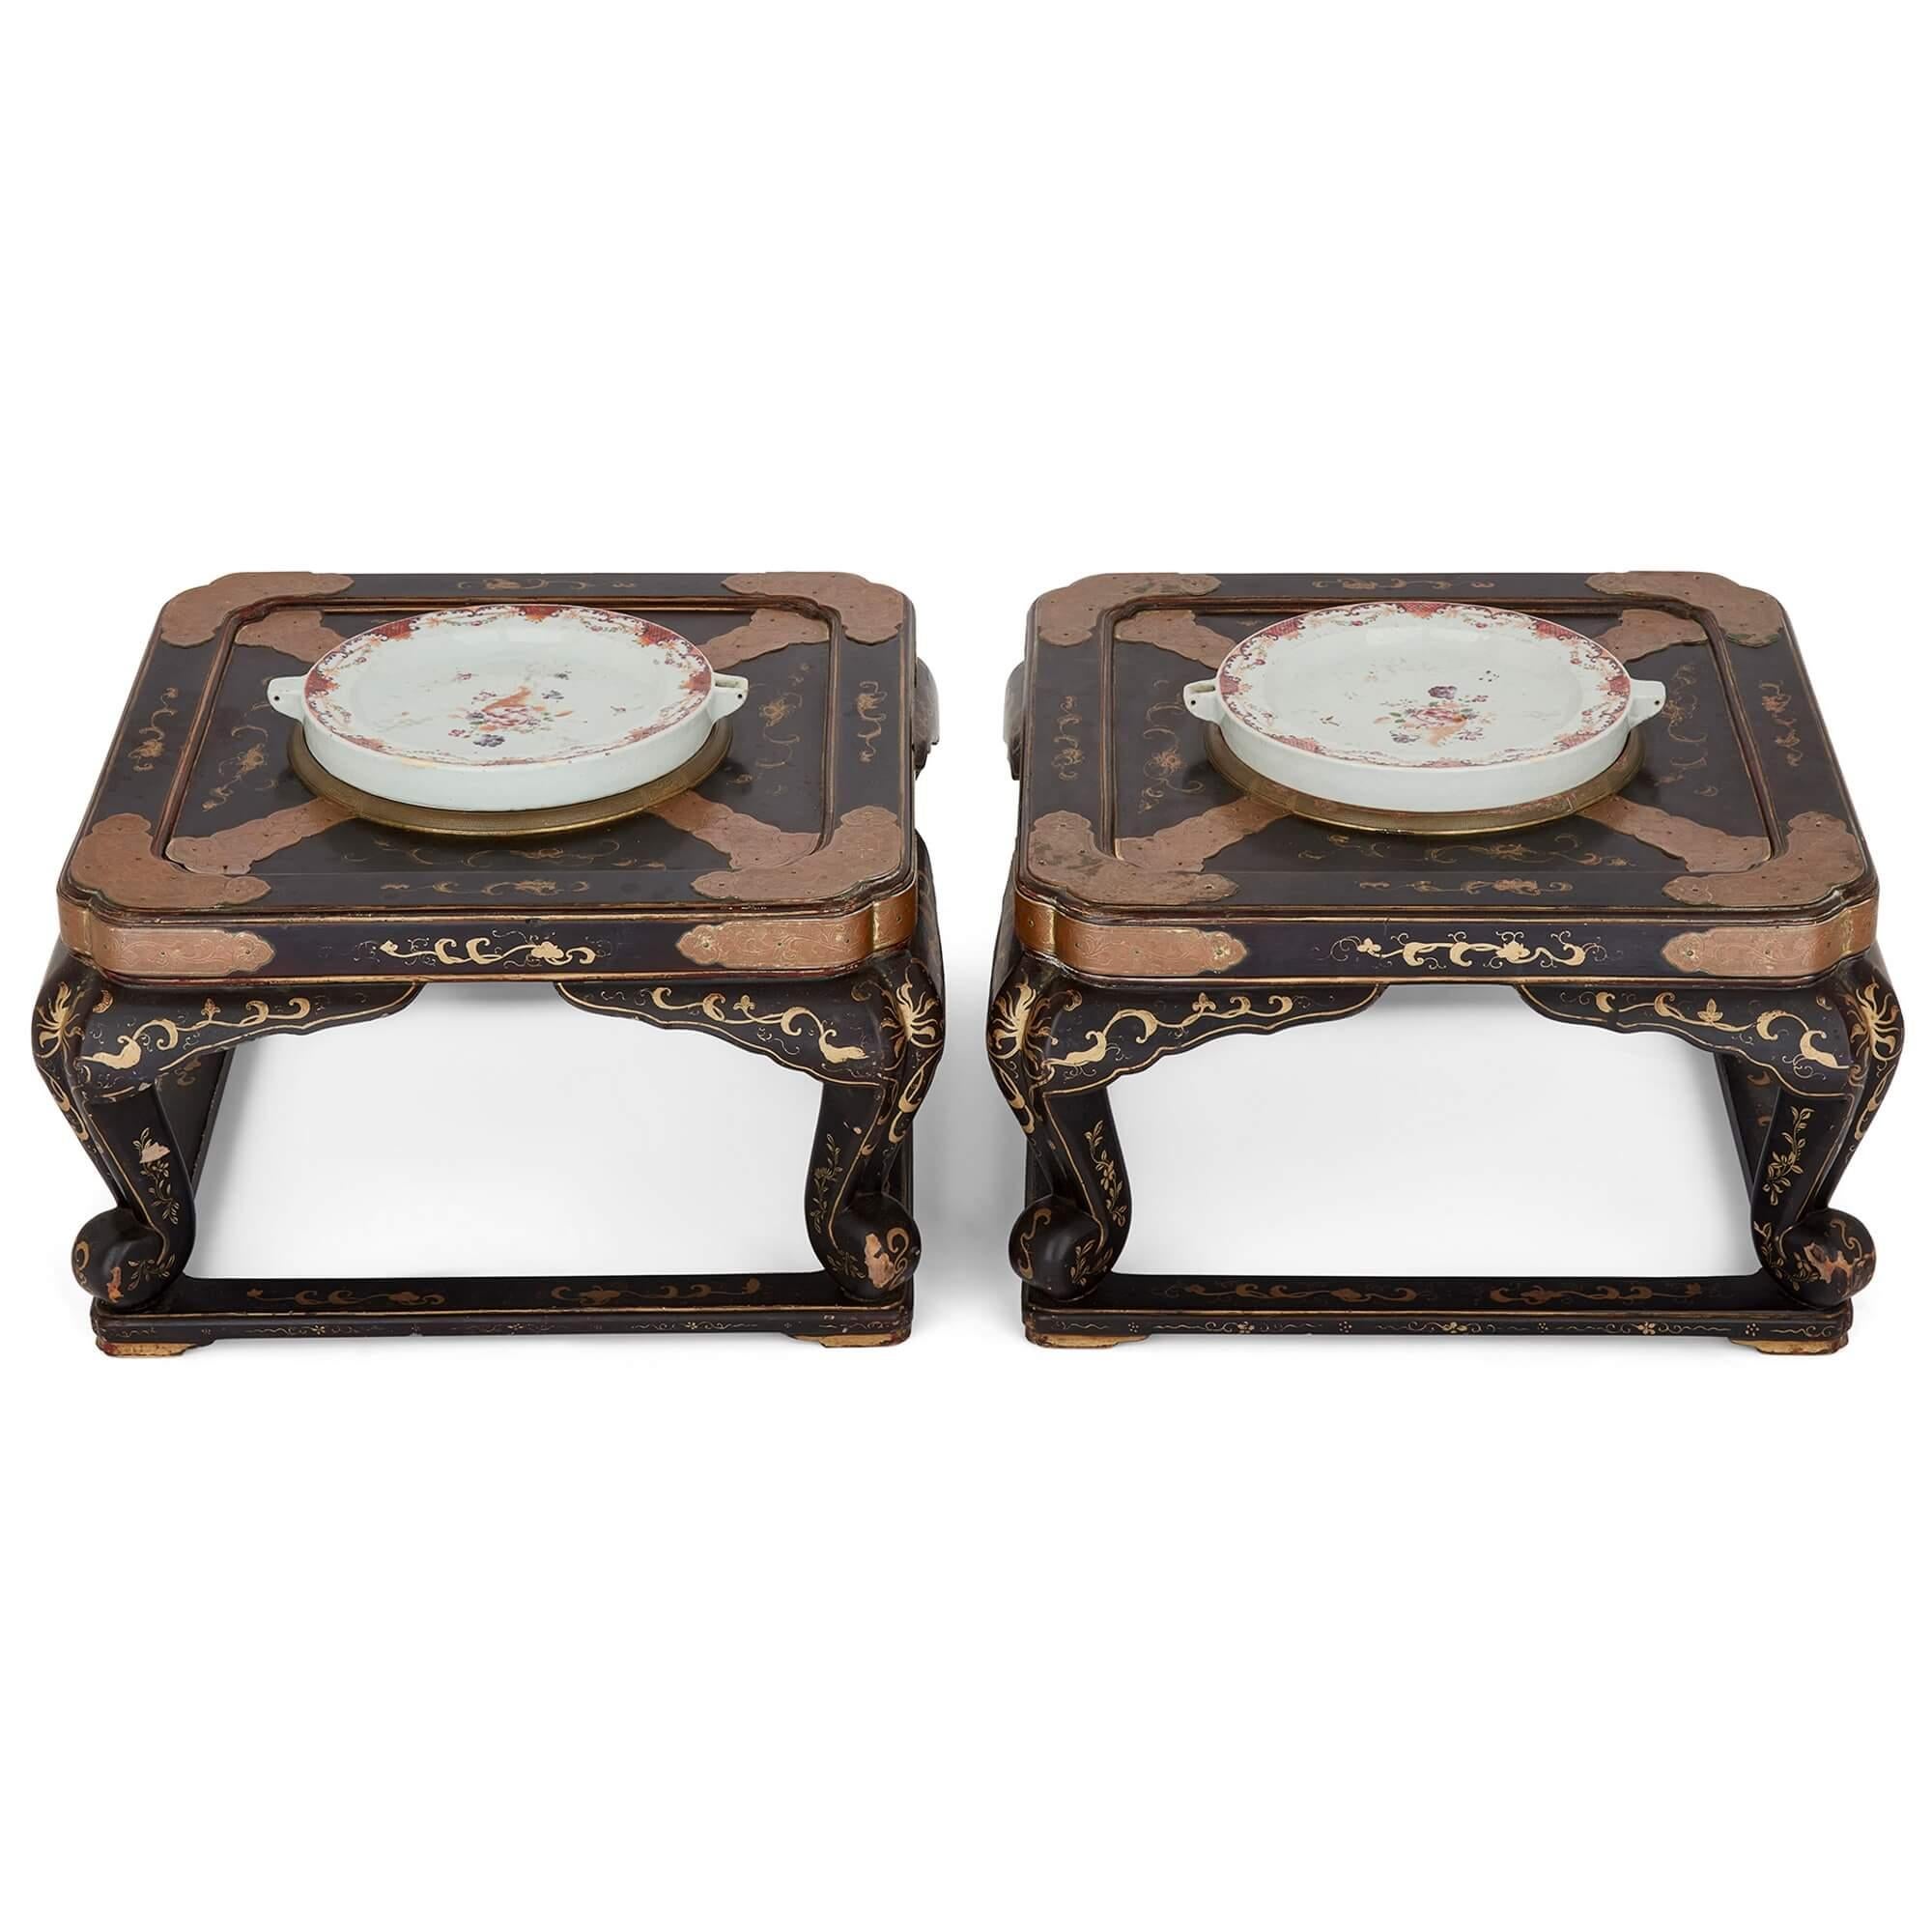 Paar antike chinesische lackierte niedrige Tische mit Warmhalteplatten aus Porzellan
Chinesisch, 18. und 19. Jahrhundert
Höhe 30cm, Breite 51cm, Tiefe 51cm

Dieses Paar lackierter niedriger Tische, die mit wärmenden Porzellantellern bestückt sind,